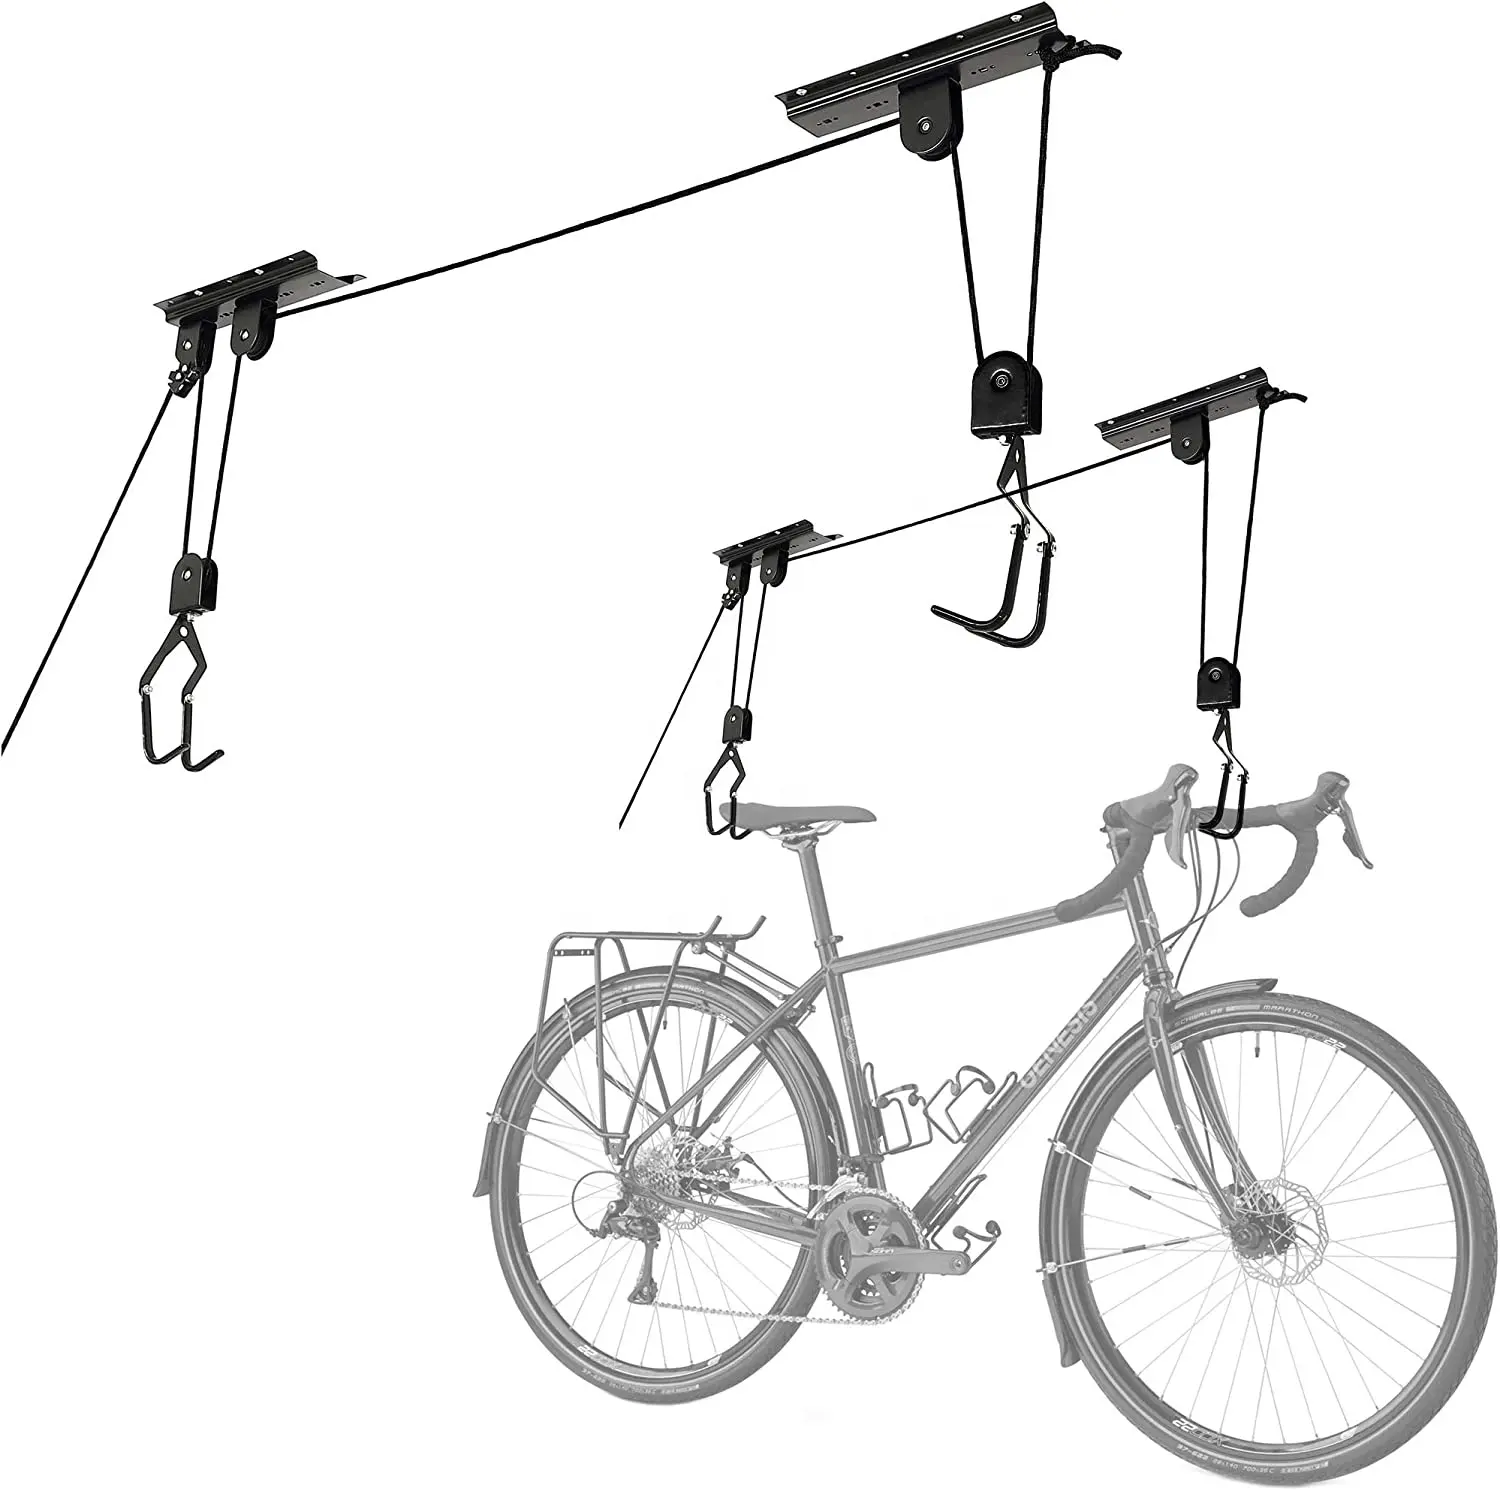 बाइक पिछलग्गू-ओवरहेड Hoists चरखी प्रणाली 100lb क्षमता के साथ साइकिल के लिए या सीढ़ी-सुरक्षित गेराज छत भंडारण